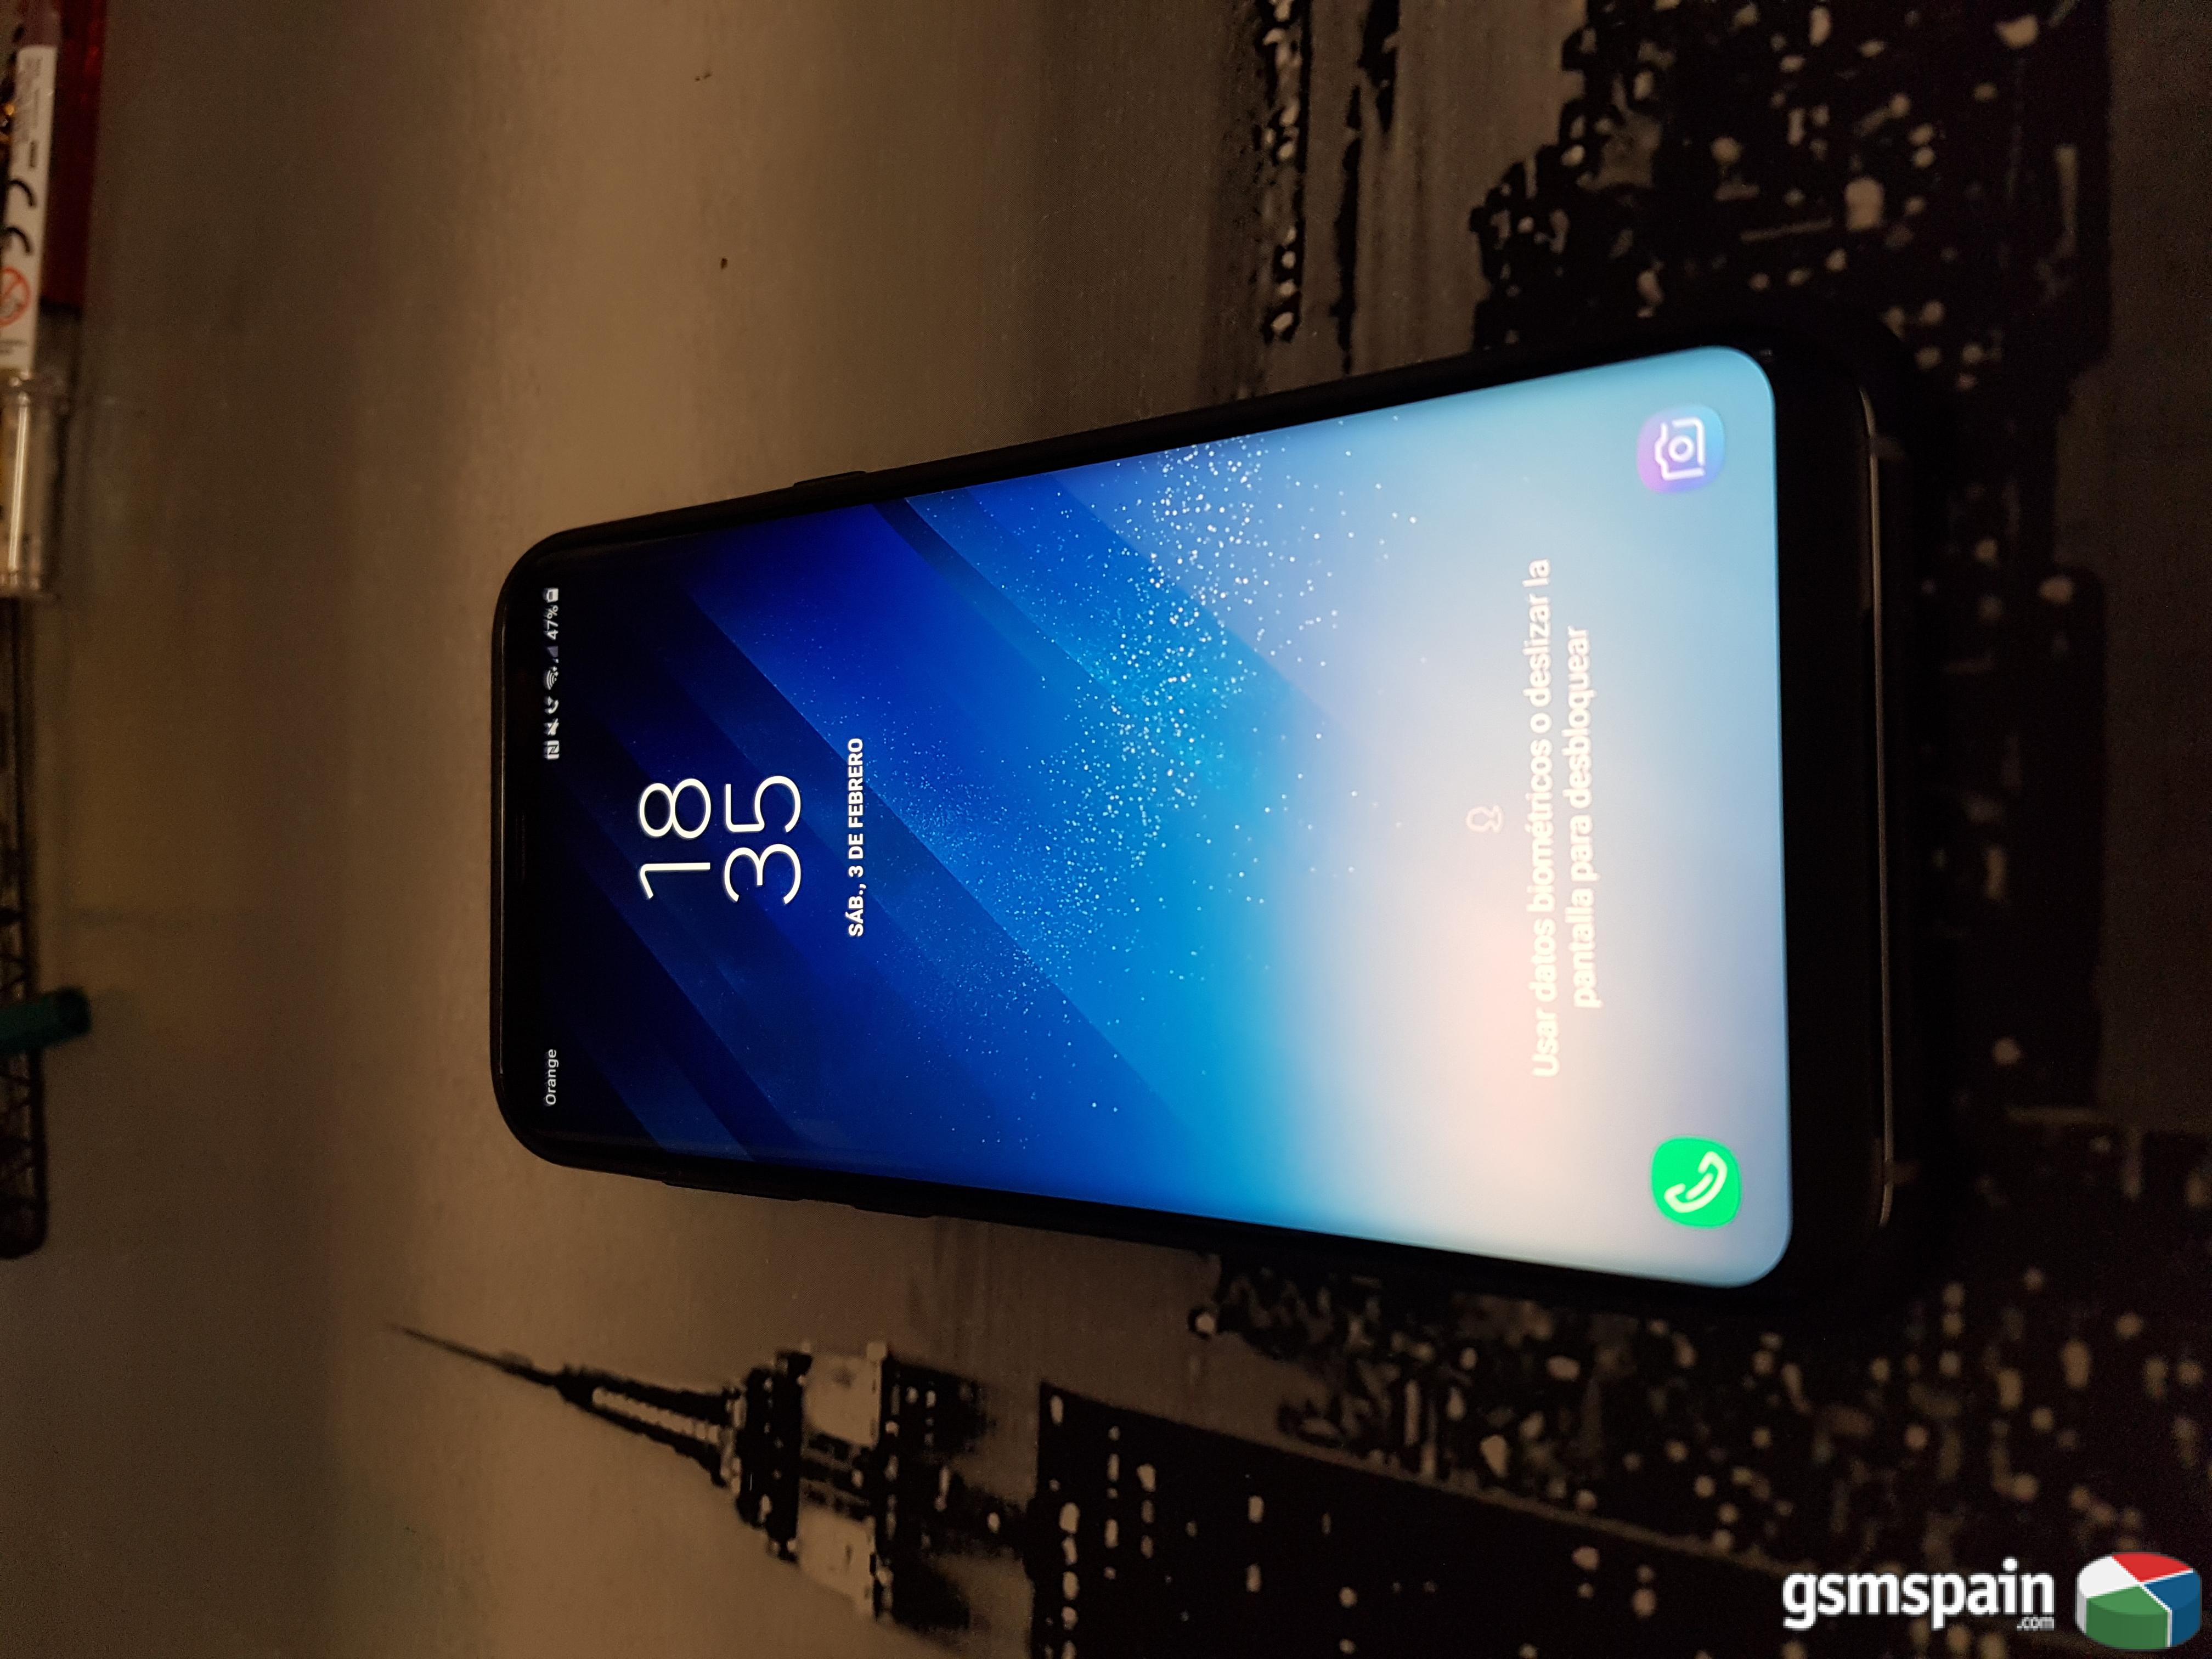 [VENDO] Samsung s8 plus artic silver impoluto